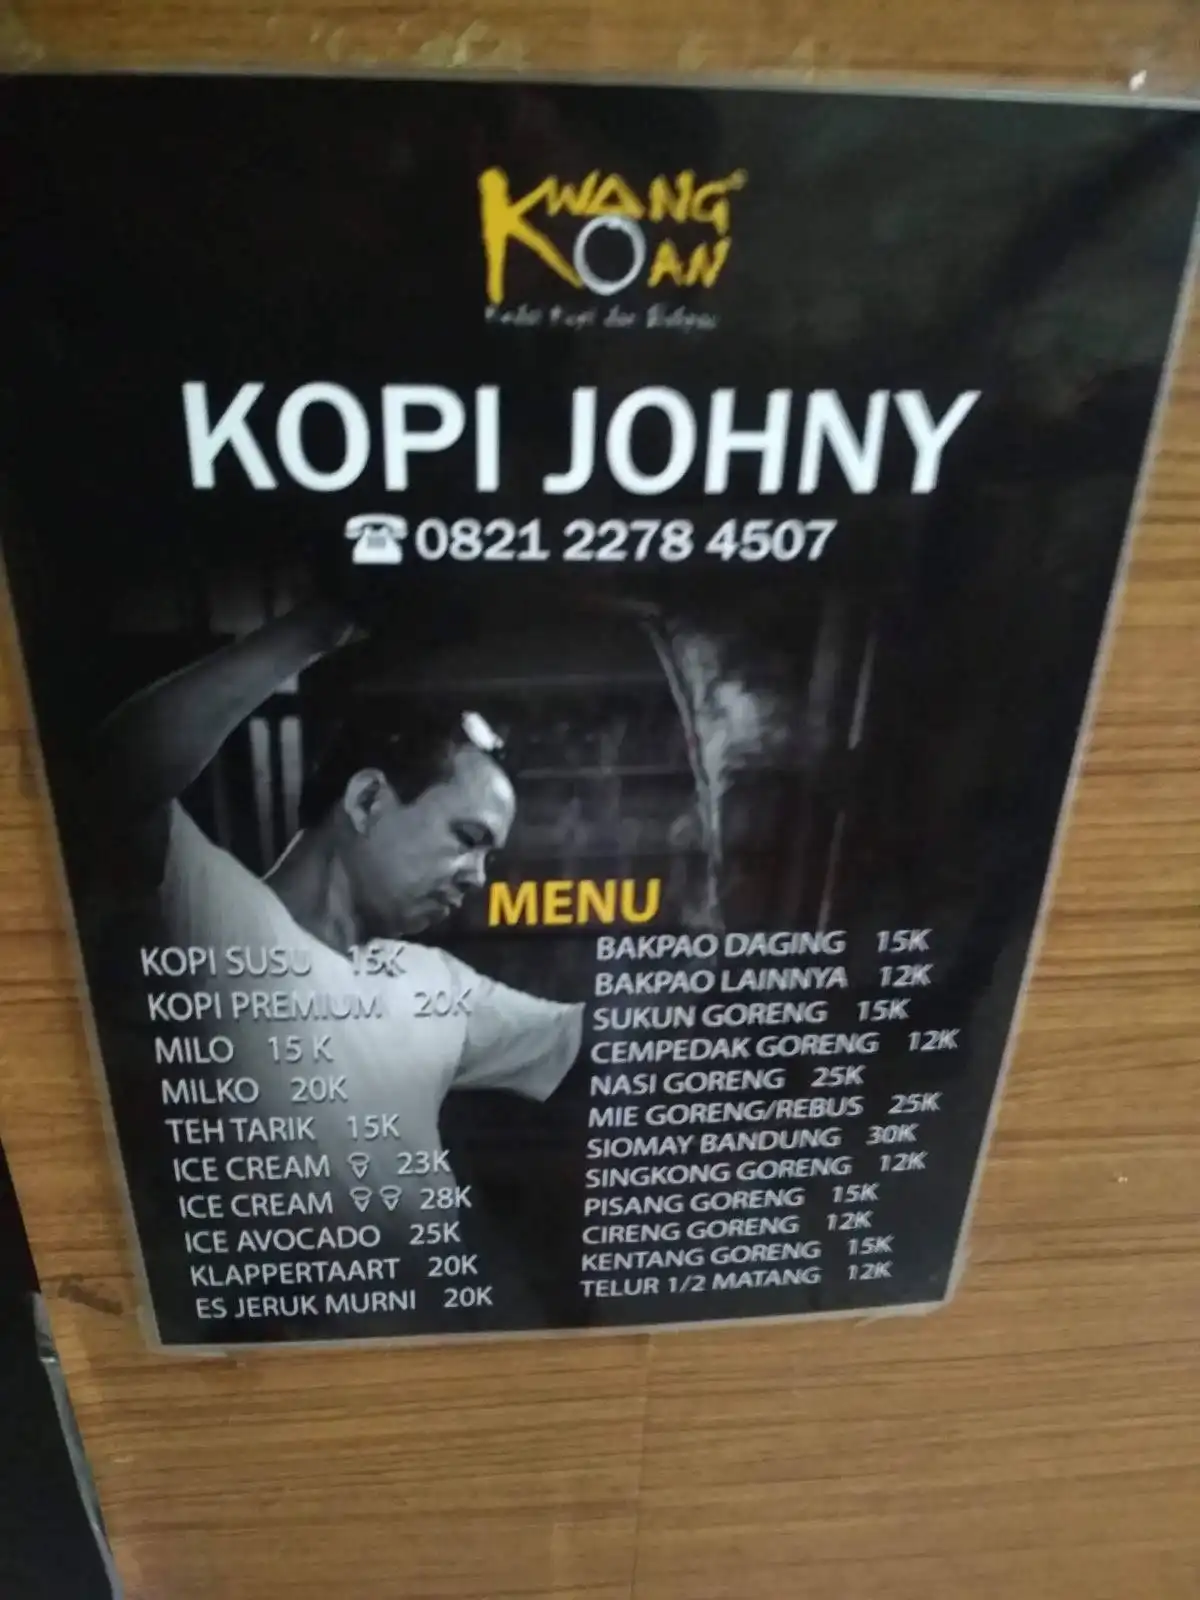 Kwang Koan Kopi Johny Gading Serpong